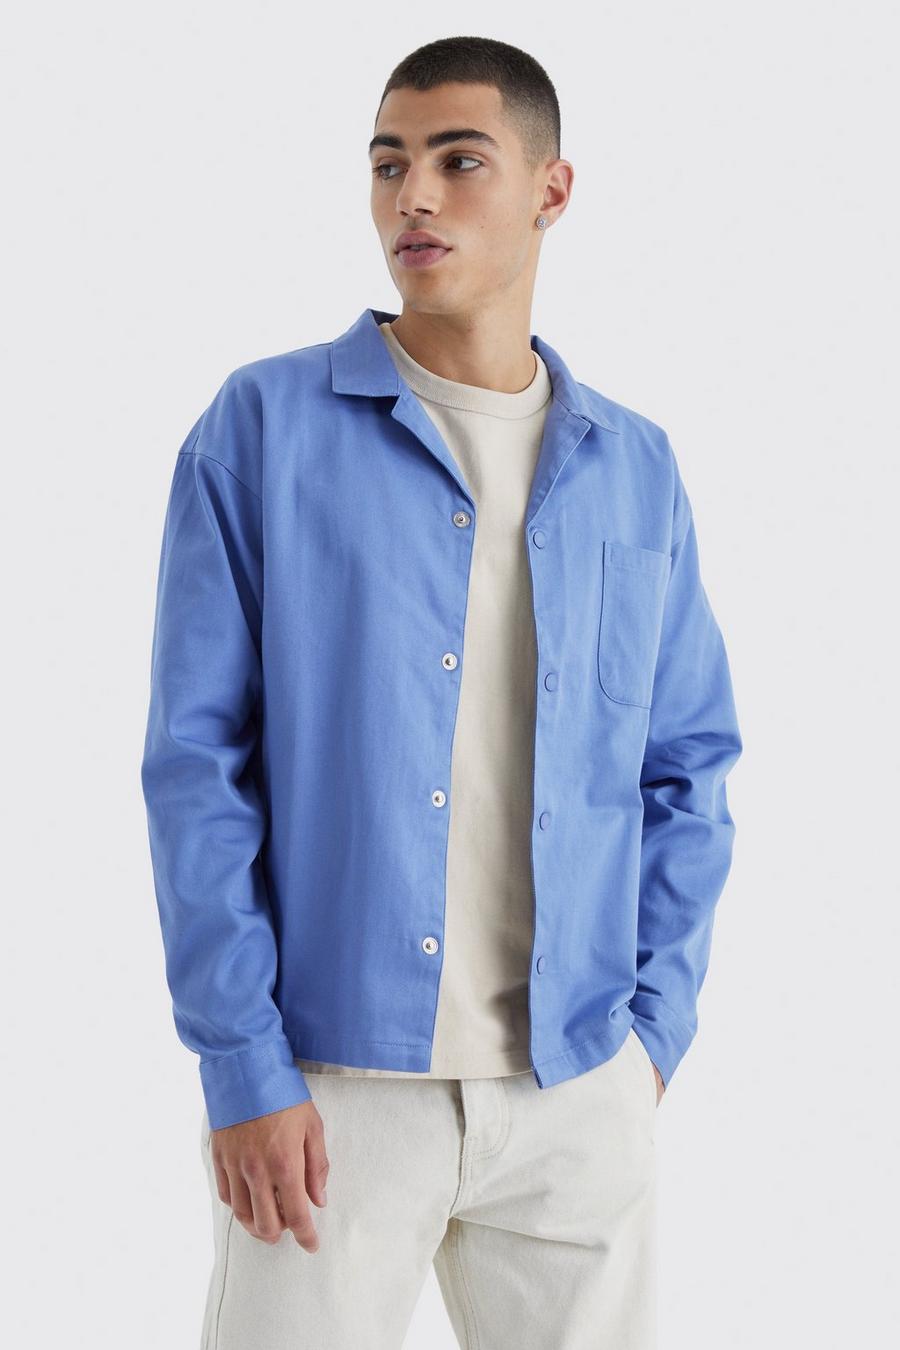 Denim-blue Boxy Harrington Keperstof Overhemd Met Revers Kraag